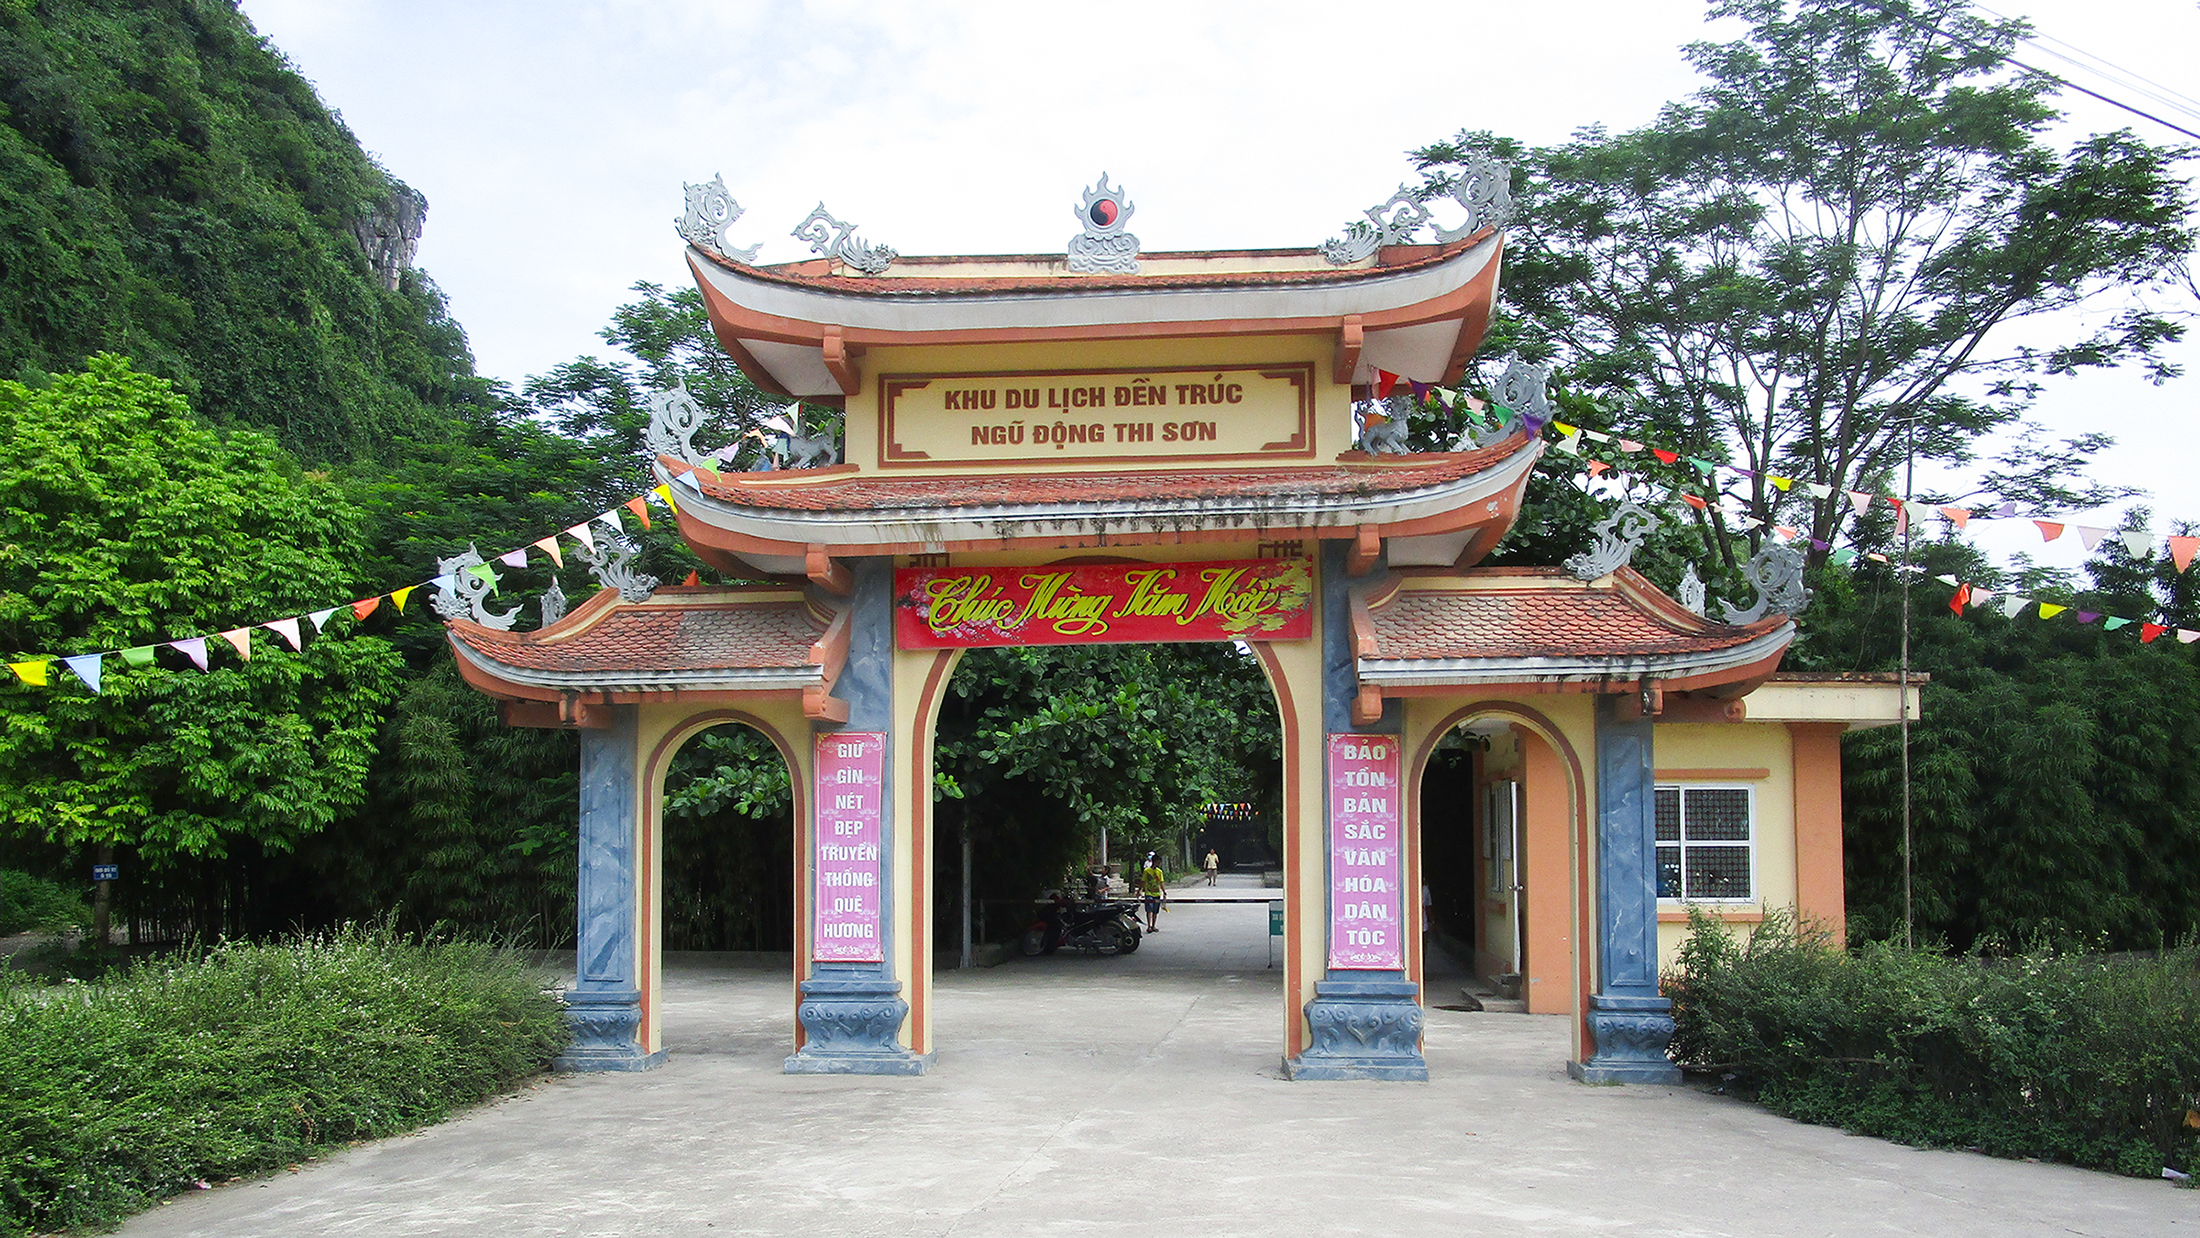 Khu du lịch Đền Trúc – Ngũ Động Thi Sơn, Kim Bảng, Hà Nam